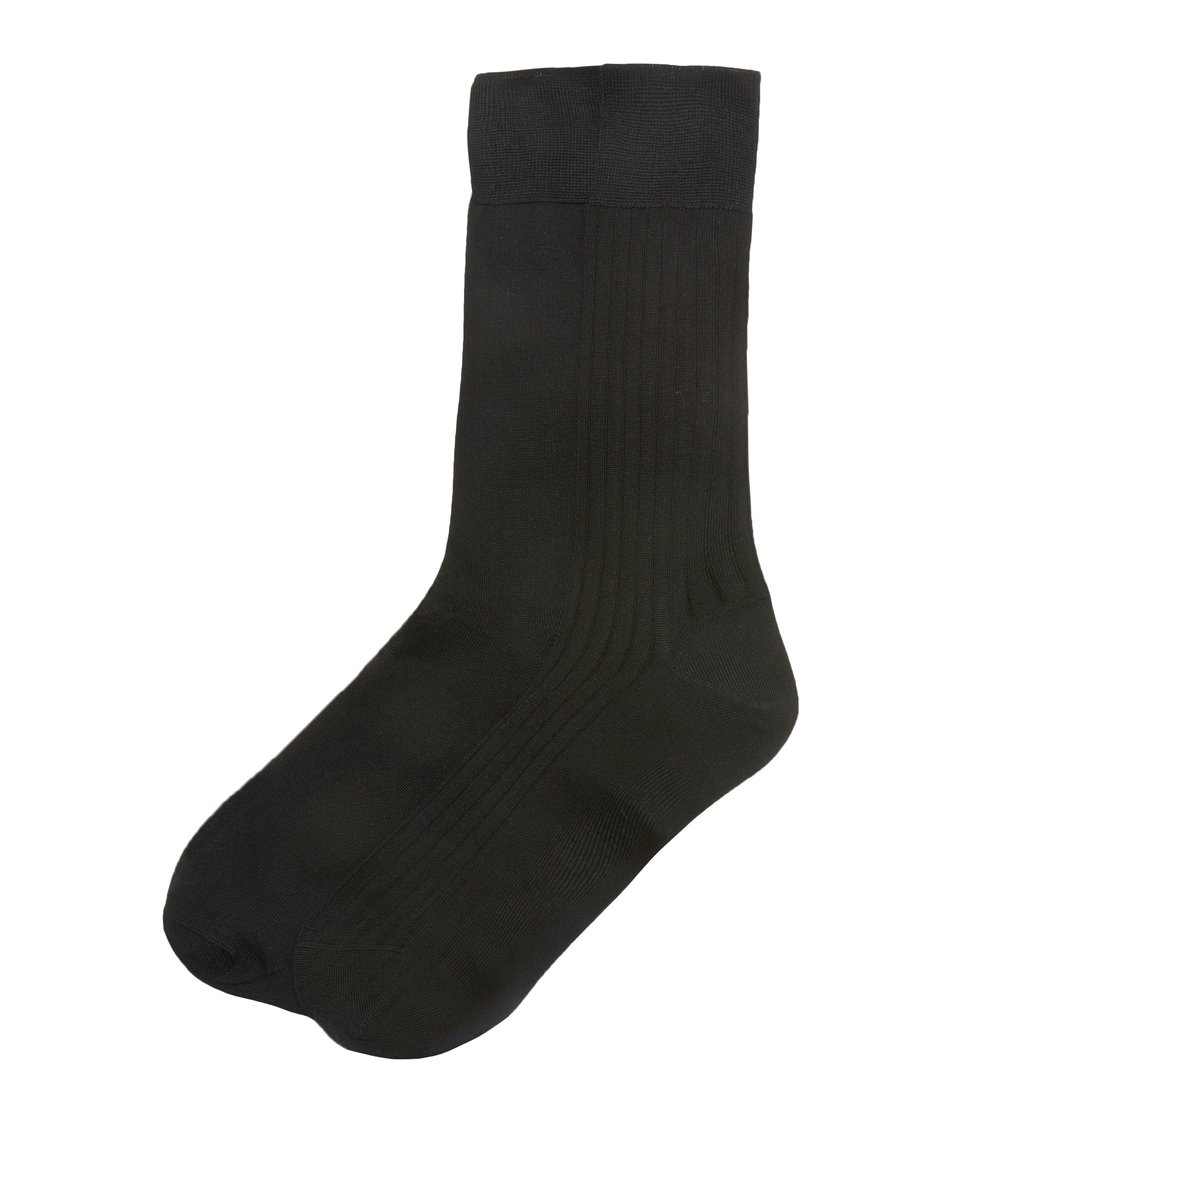 Комплект из  пар носков La Redoute фильдекос 41/42 черный, размер 41/42 фильдекос 41/42 черный - фото 1